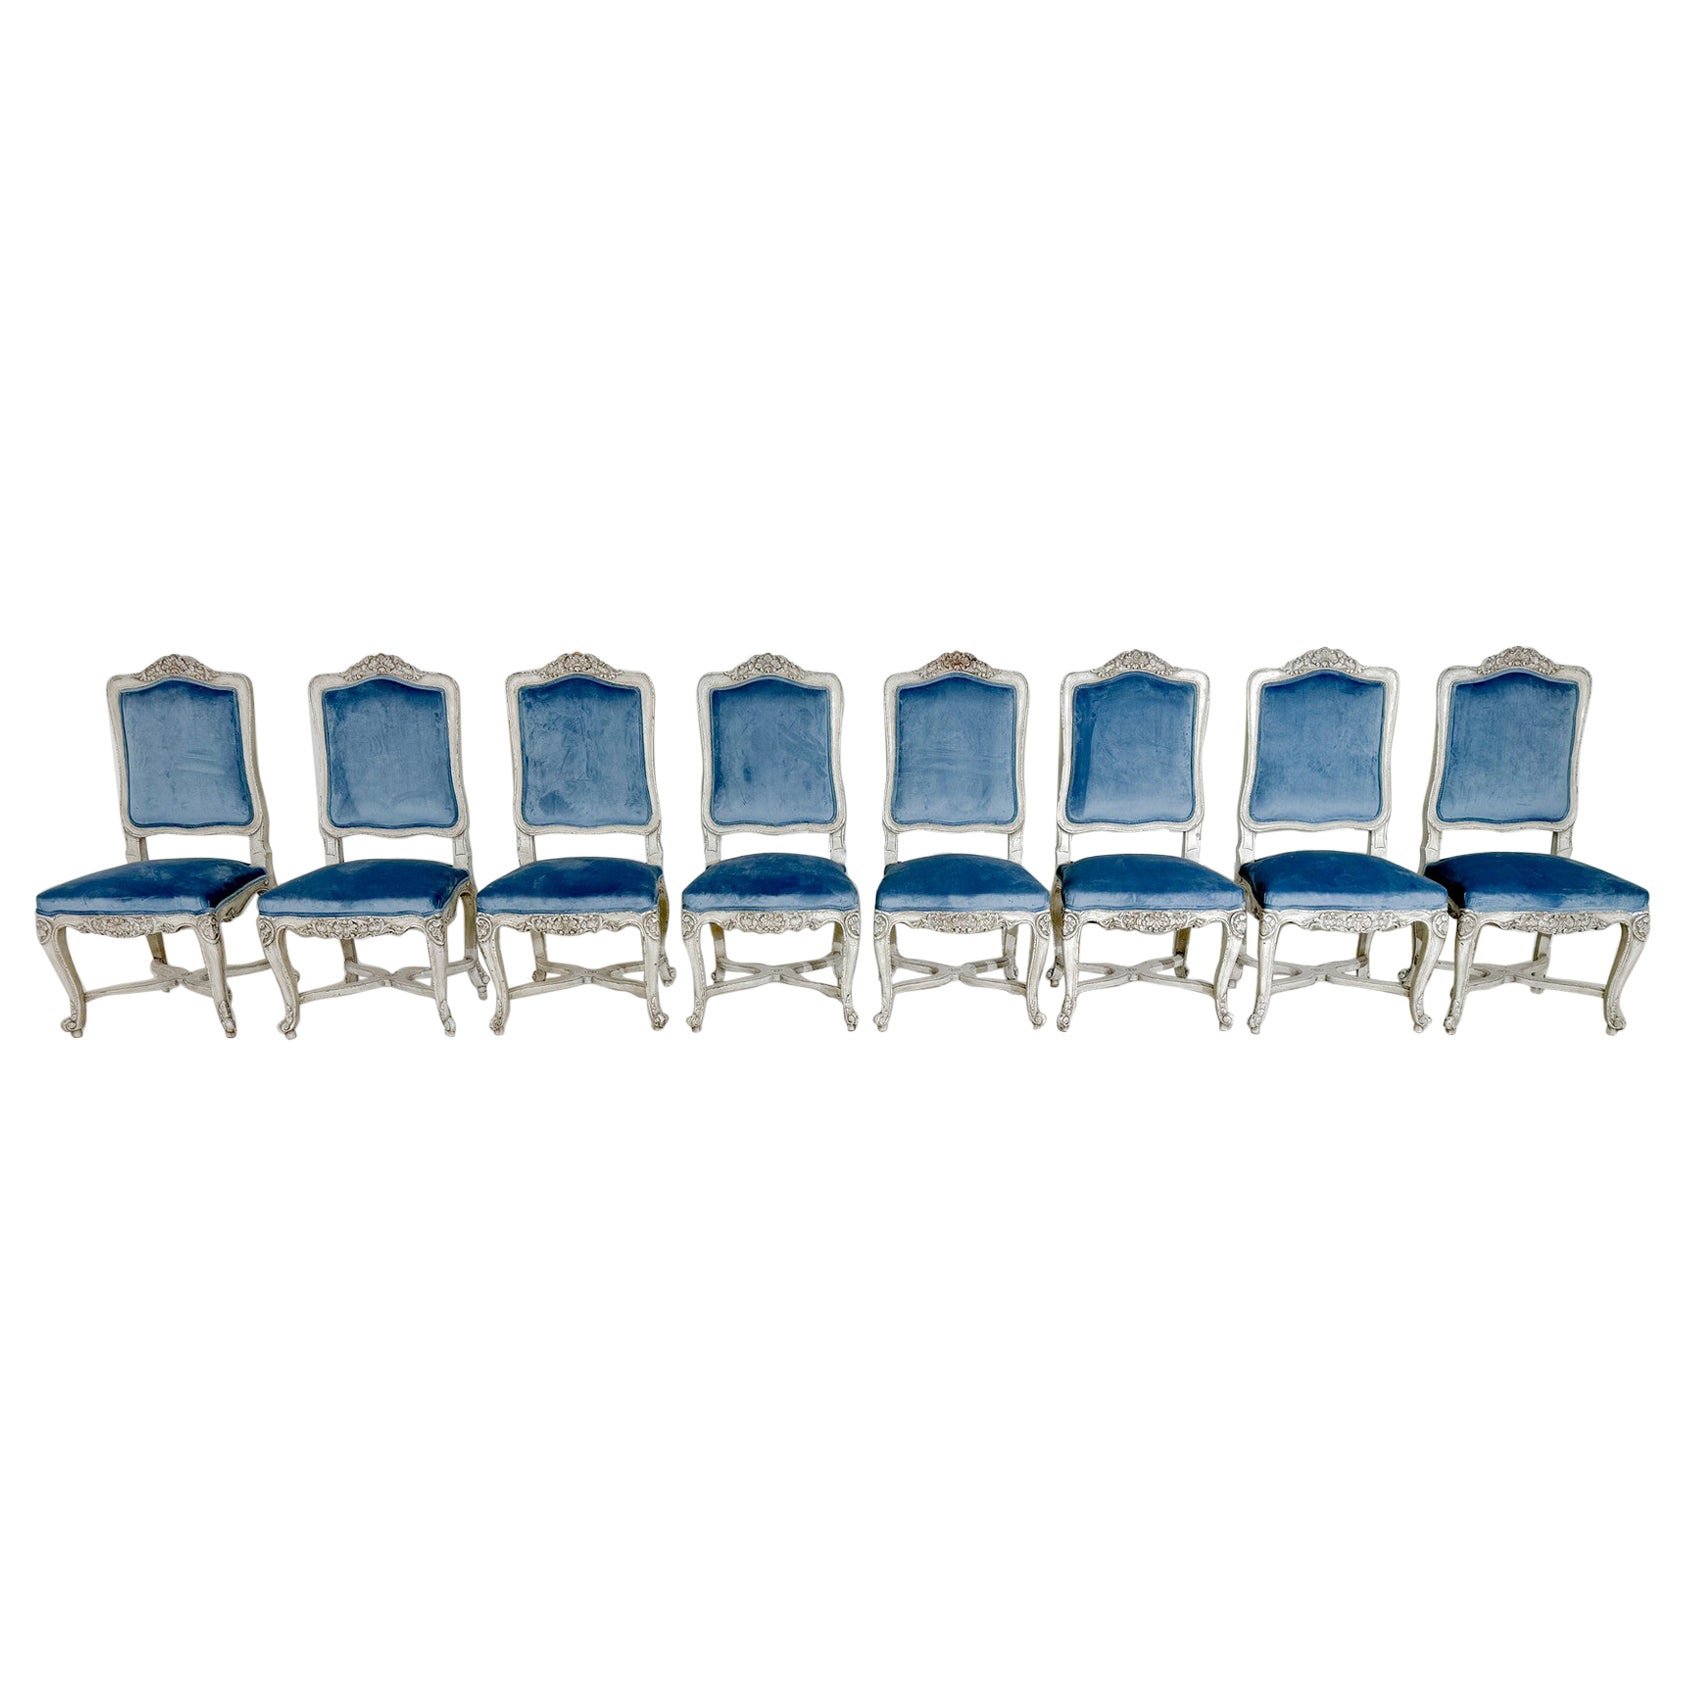 Set of 8 Regency Style Chairs, Light Blue Velvet and Wood, Belgium, 2000s